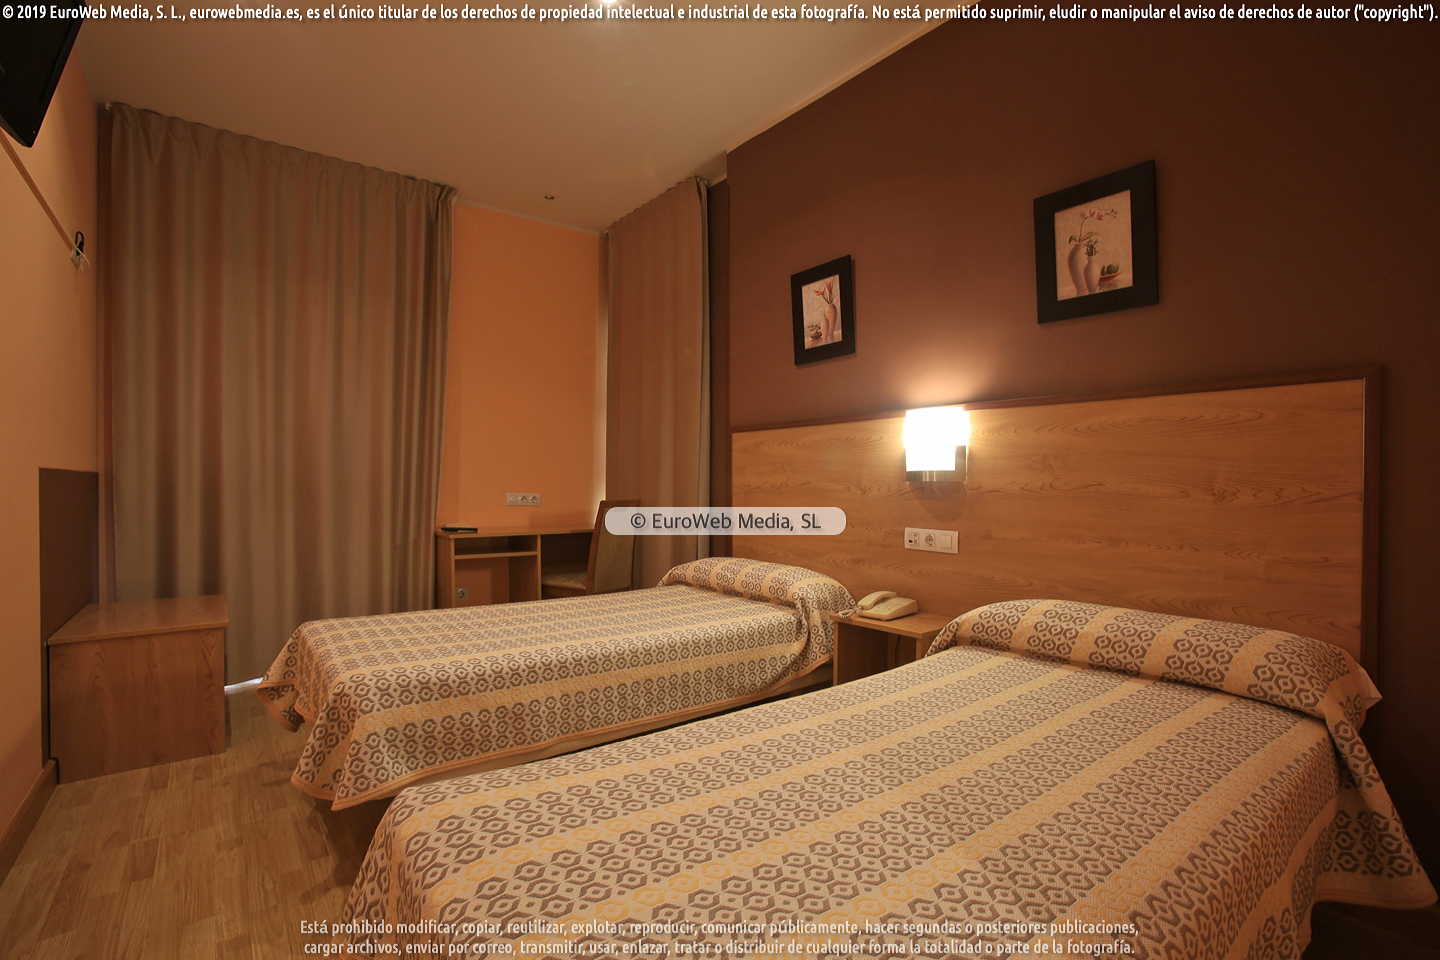 Hotel Santa Cristina: Habitación 208